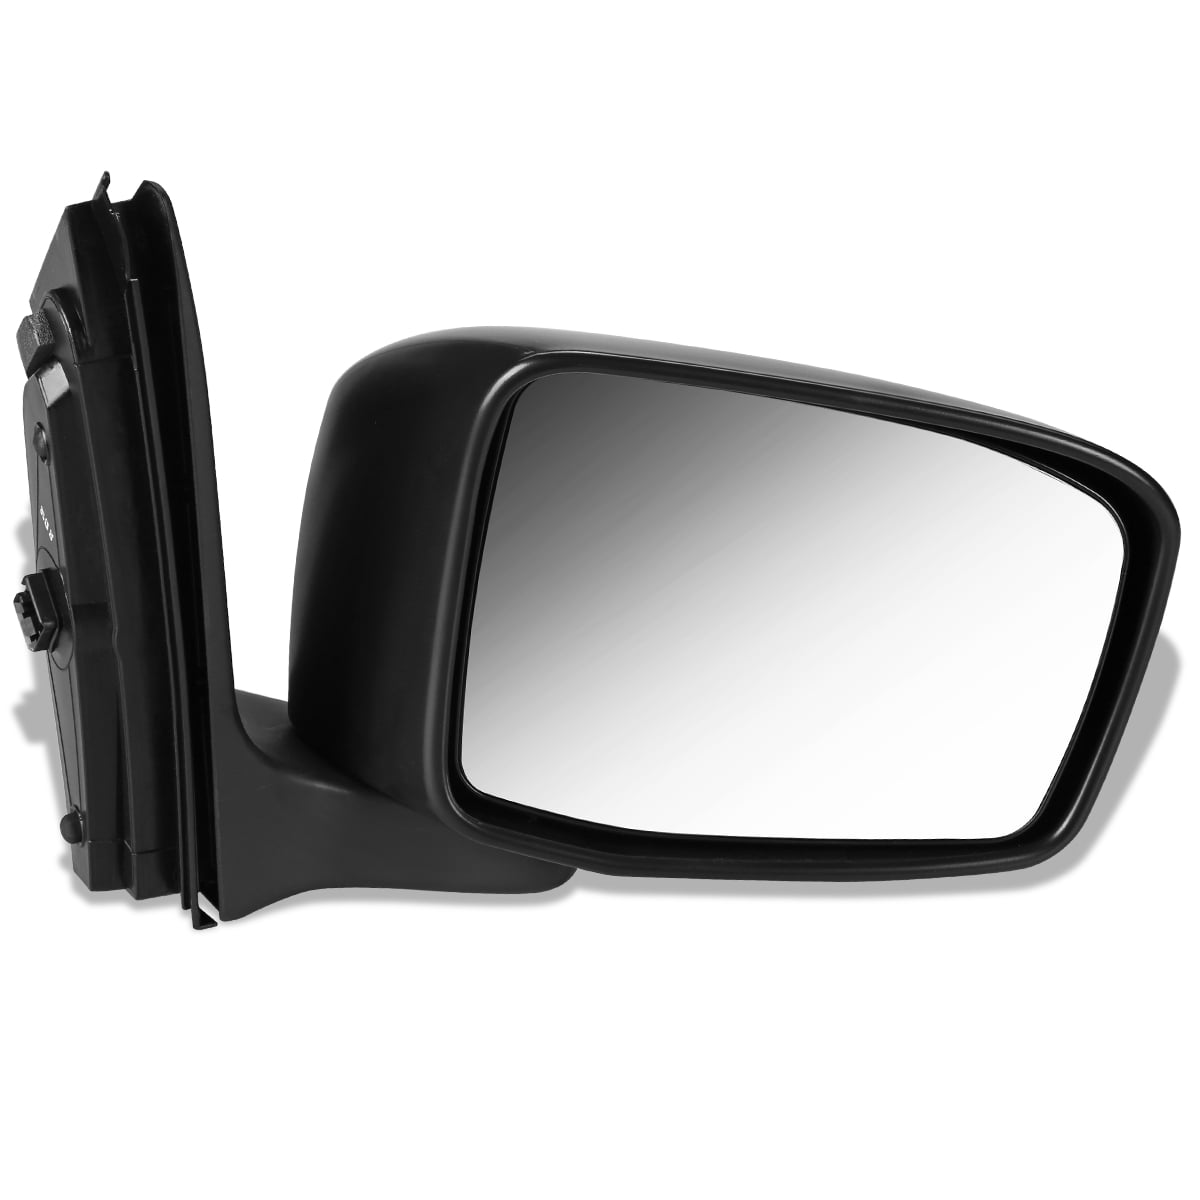 New Passenger Side Mirror For Honda Odyssey 2005-2010 HO1321156 